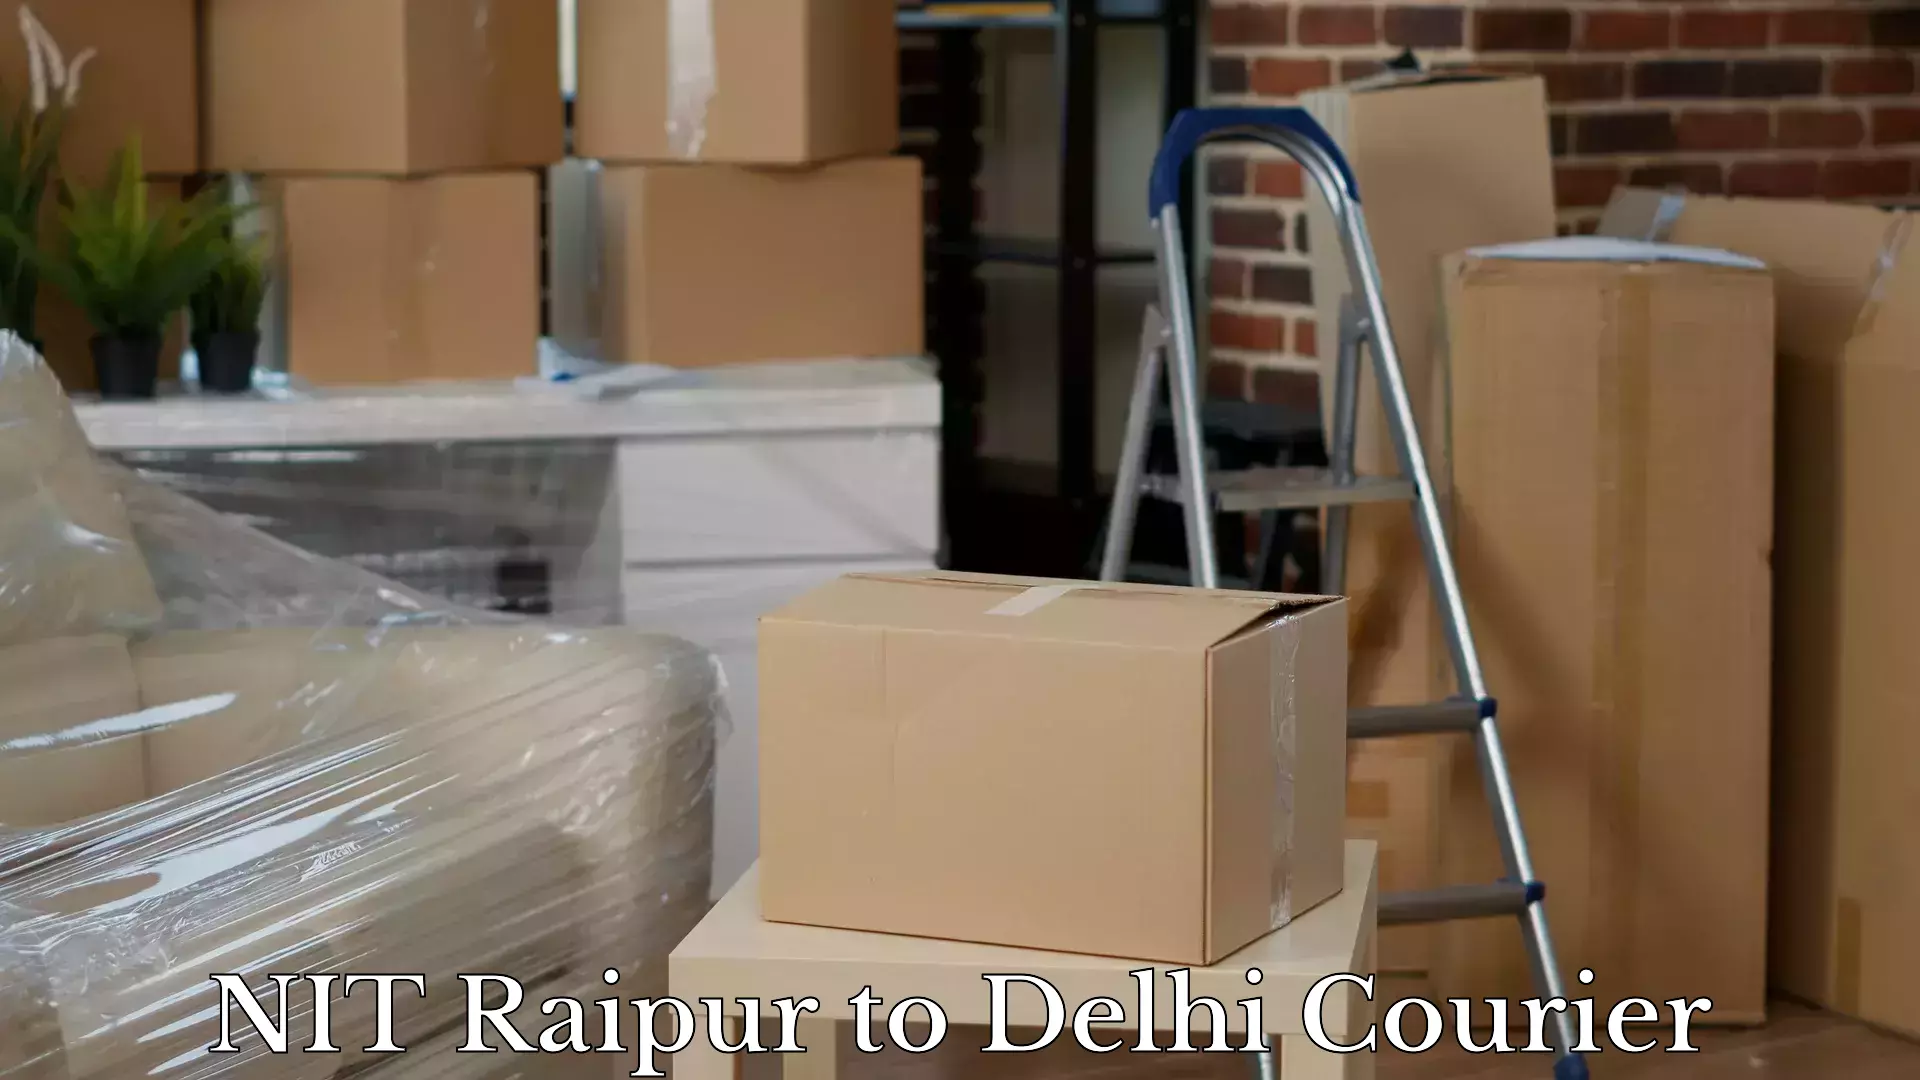 Luggage shipment tracking NIT Raipur to Lodhi Road